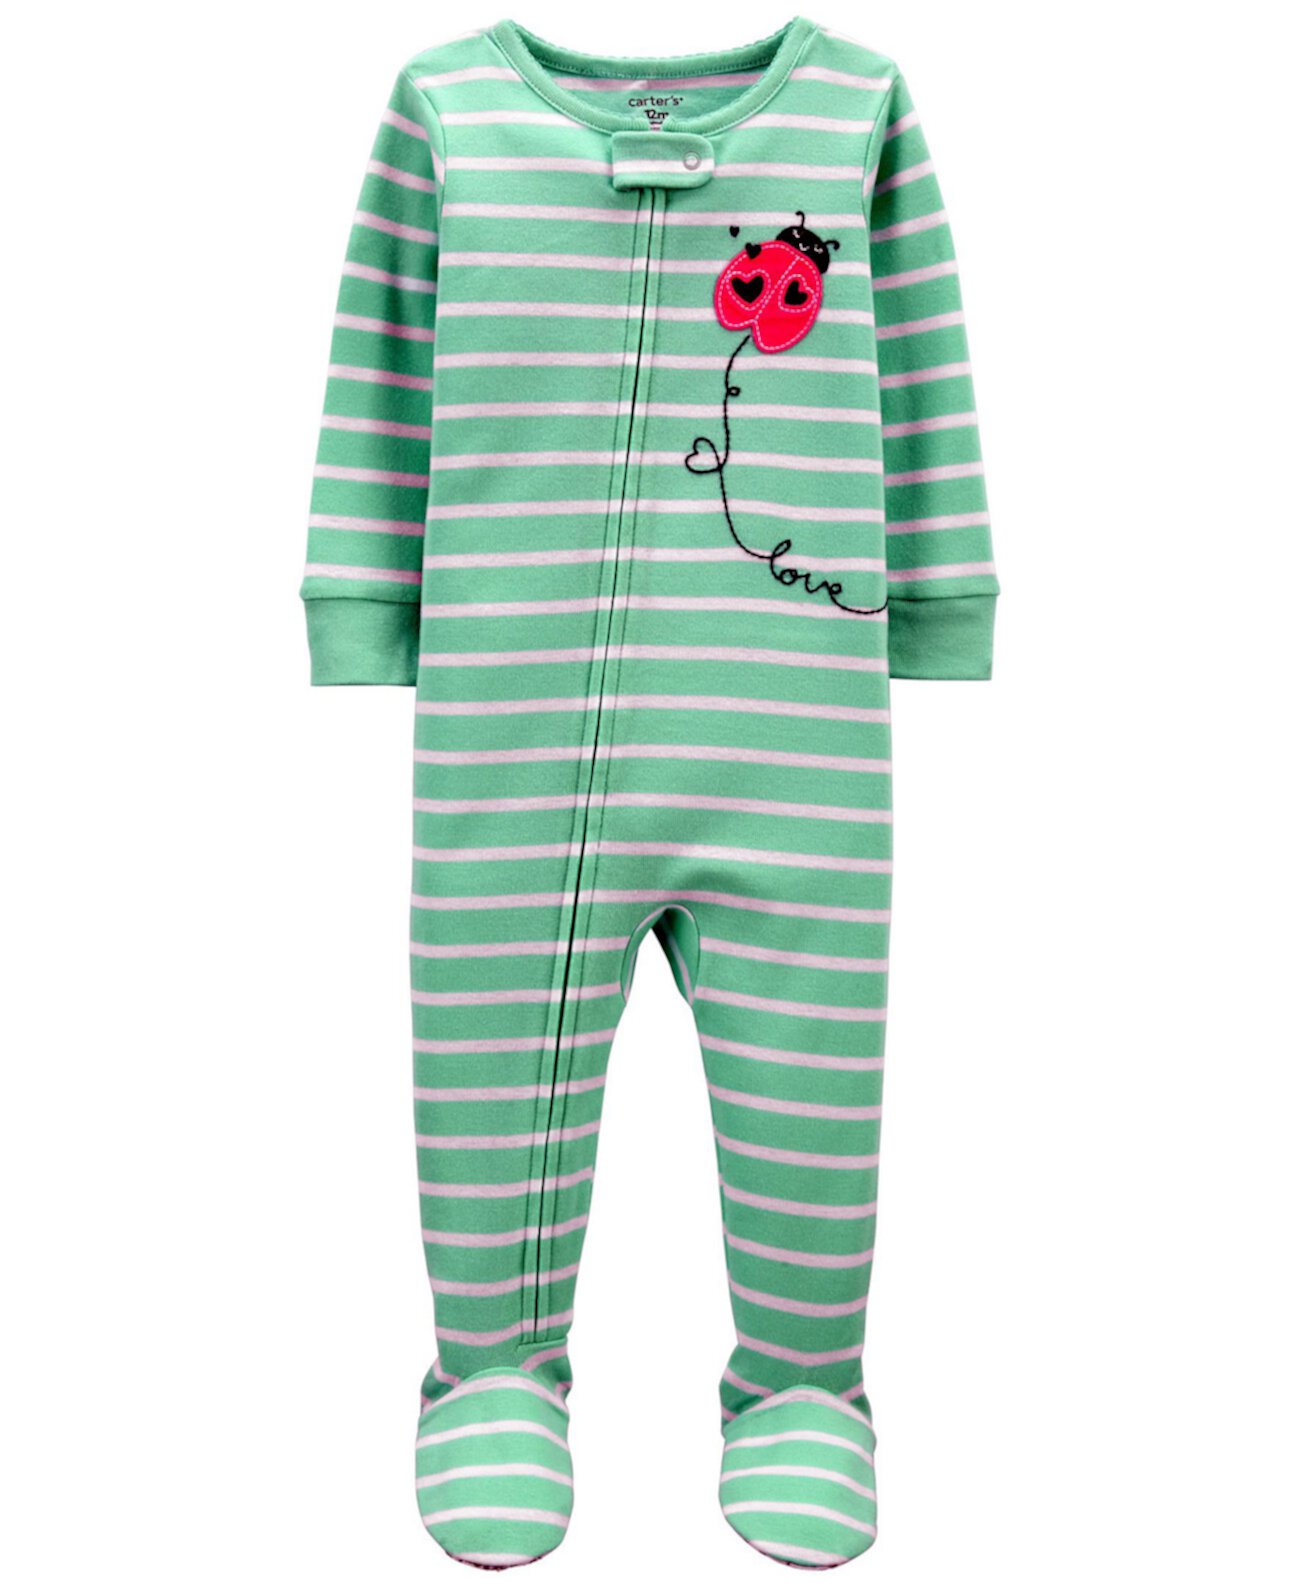 Пижамный комплект Footie Snug Fit для маленьких девочек Carter's